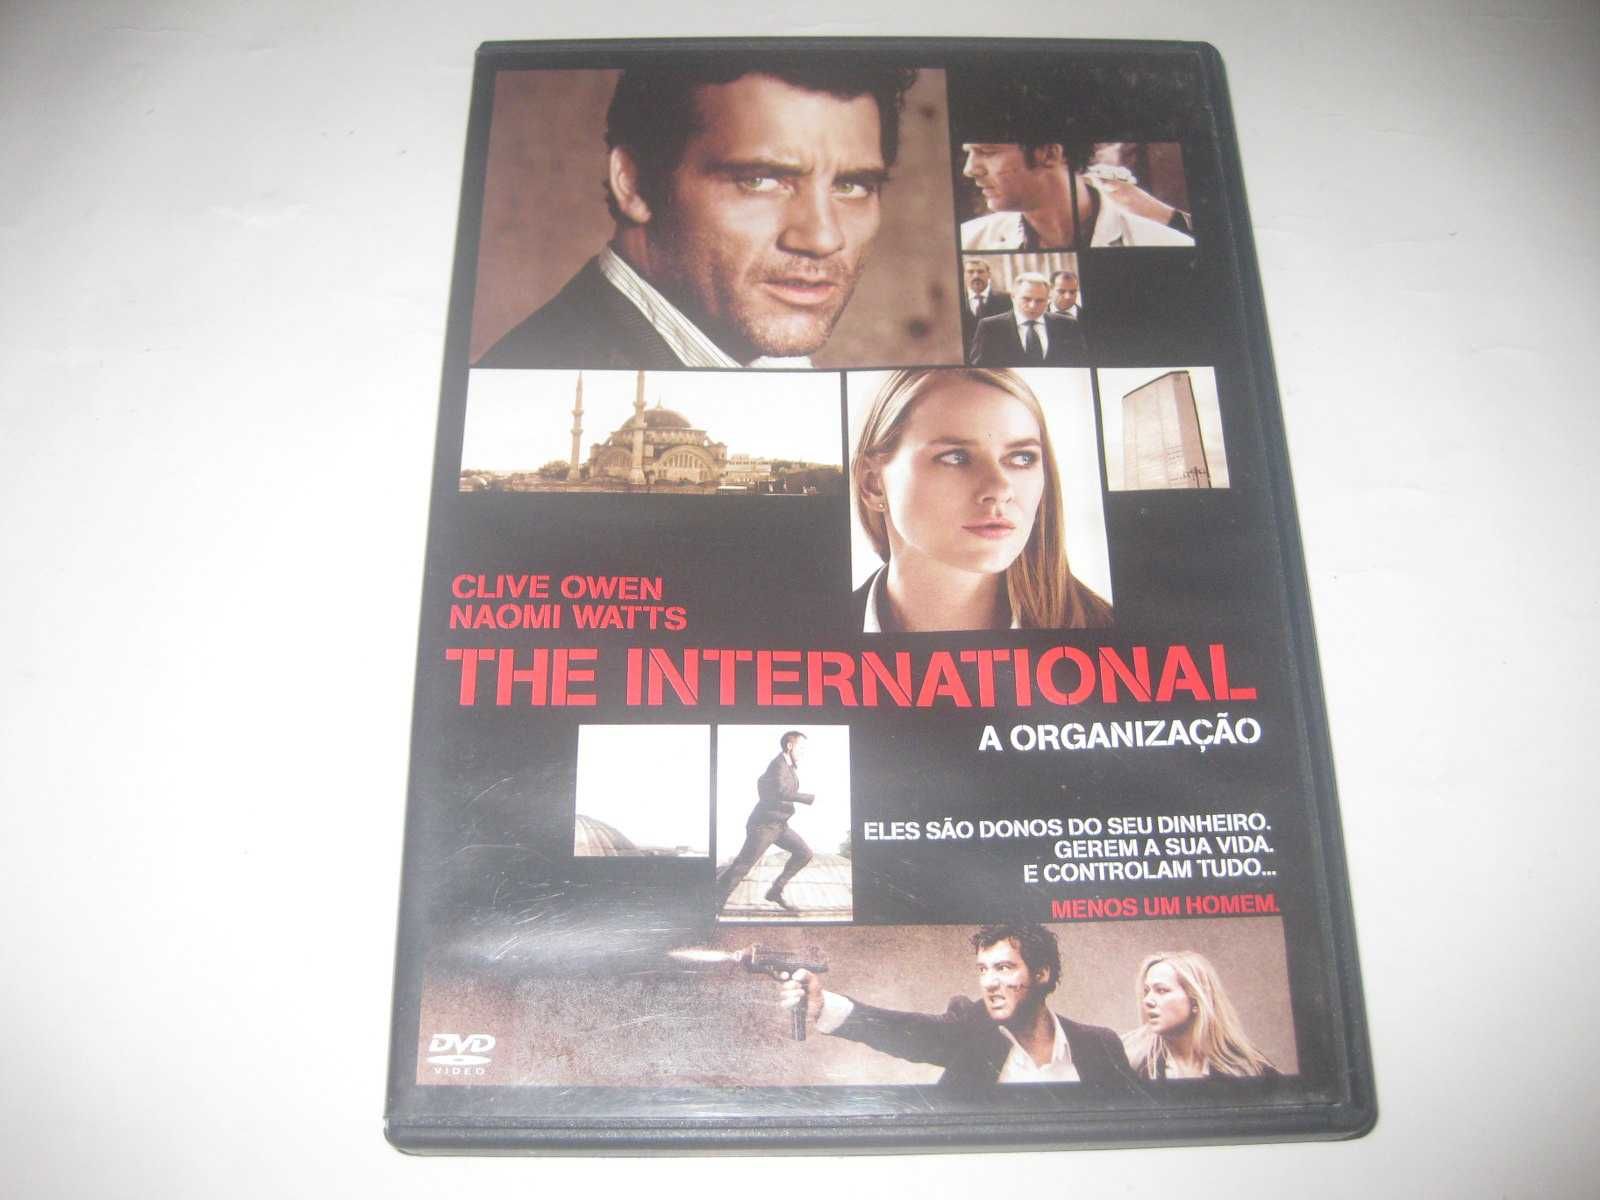 DVD "The International - A Organização" com Clive Owen